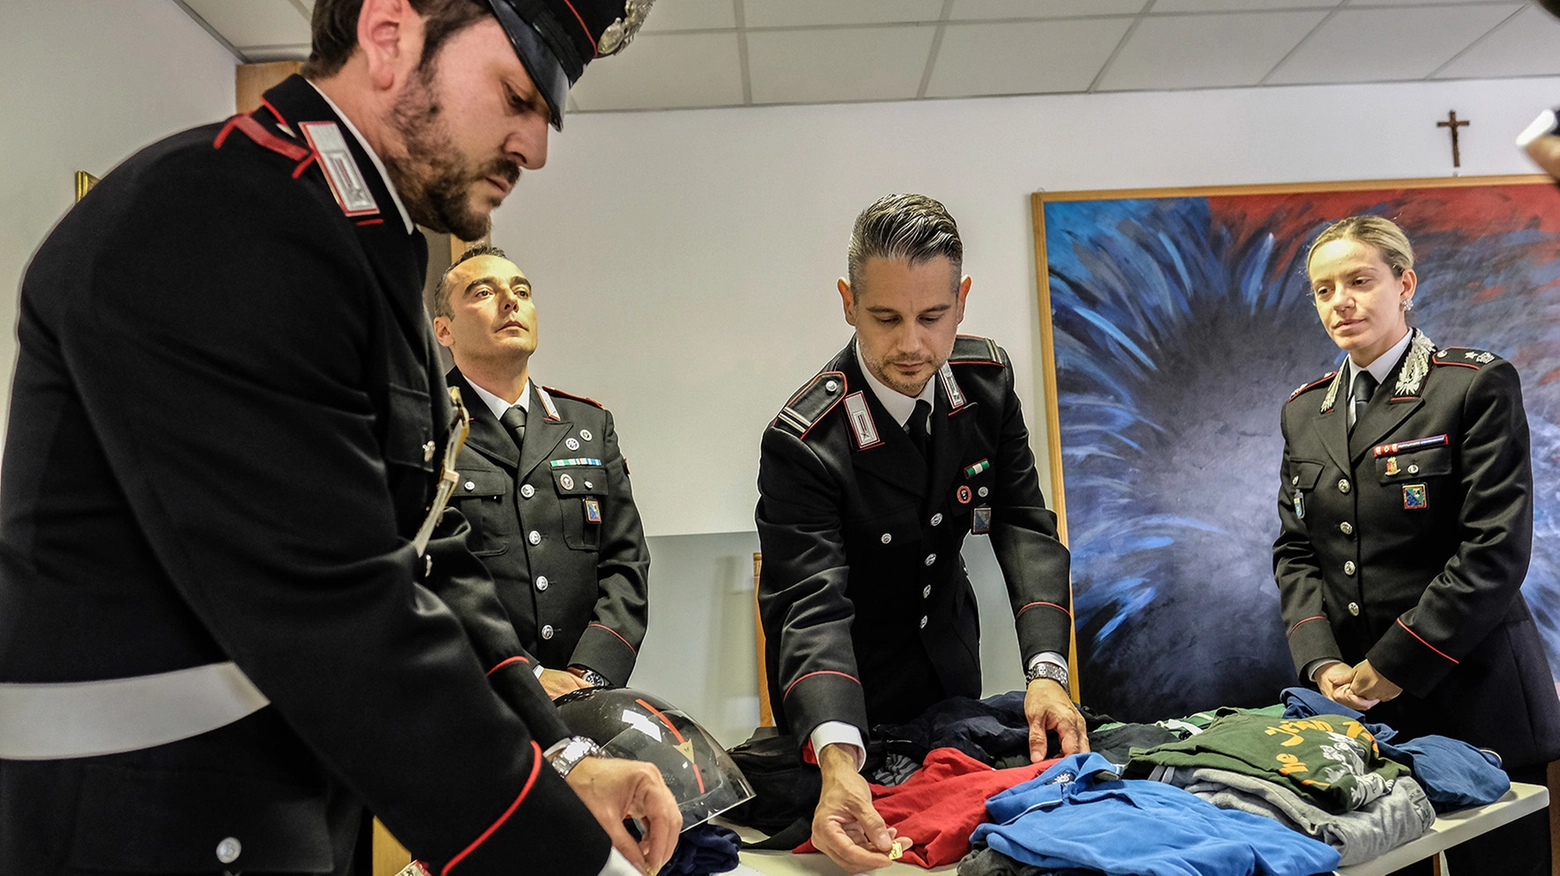 I carabinieri e la refurtiva recuperata (foto Print)